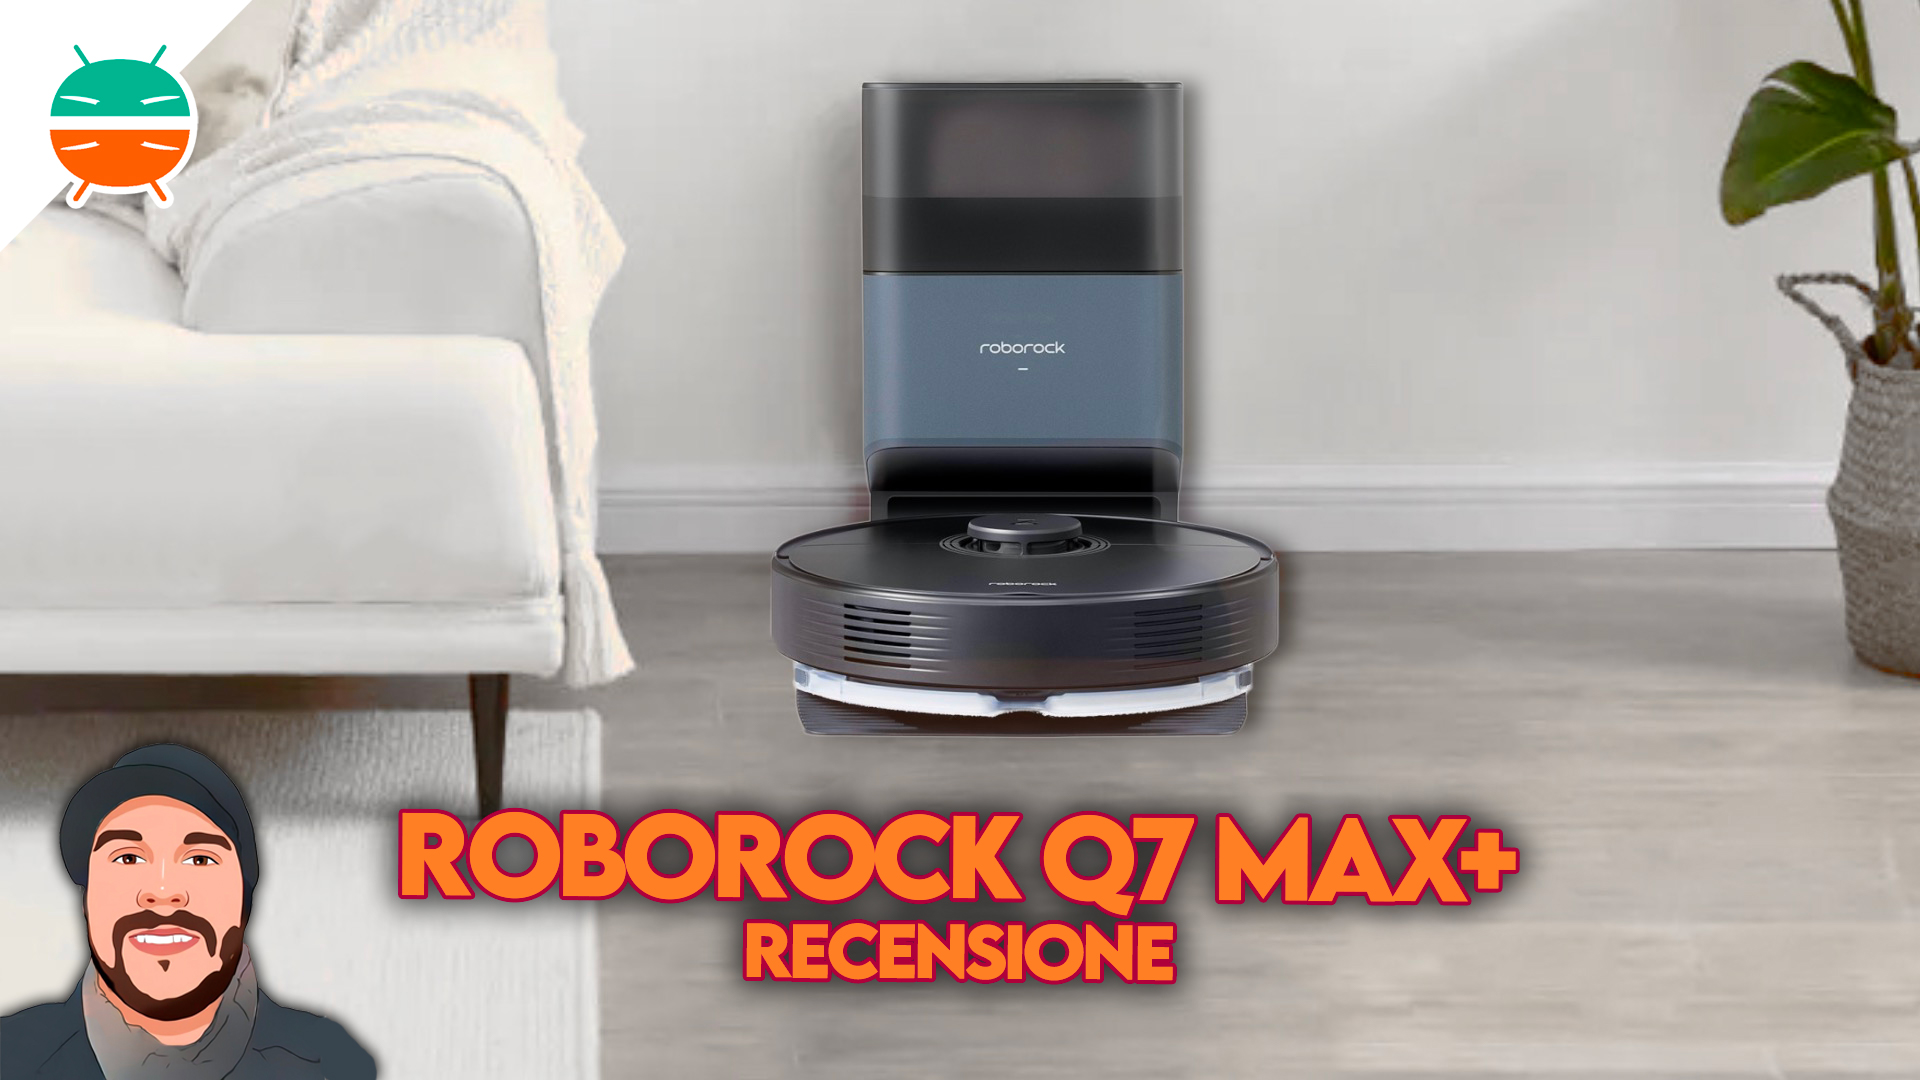 Roborock Q7 Max+/Max Review 